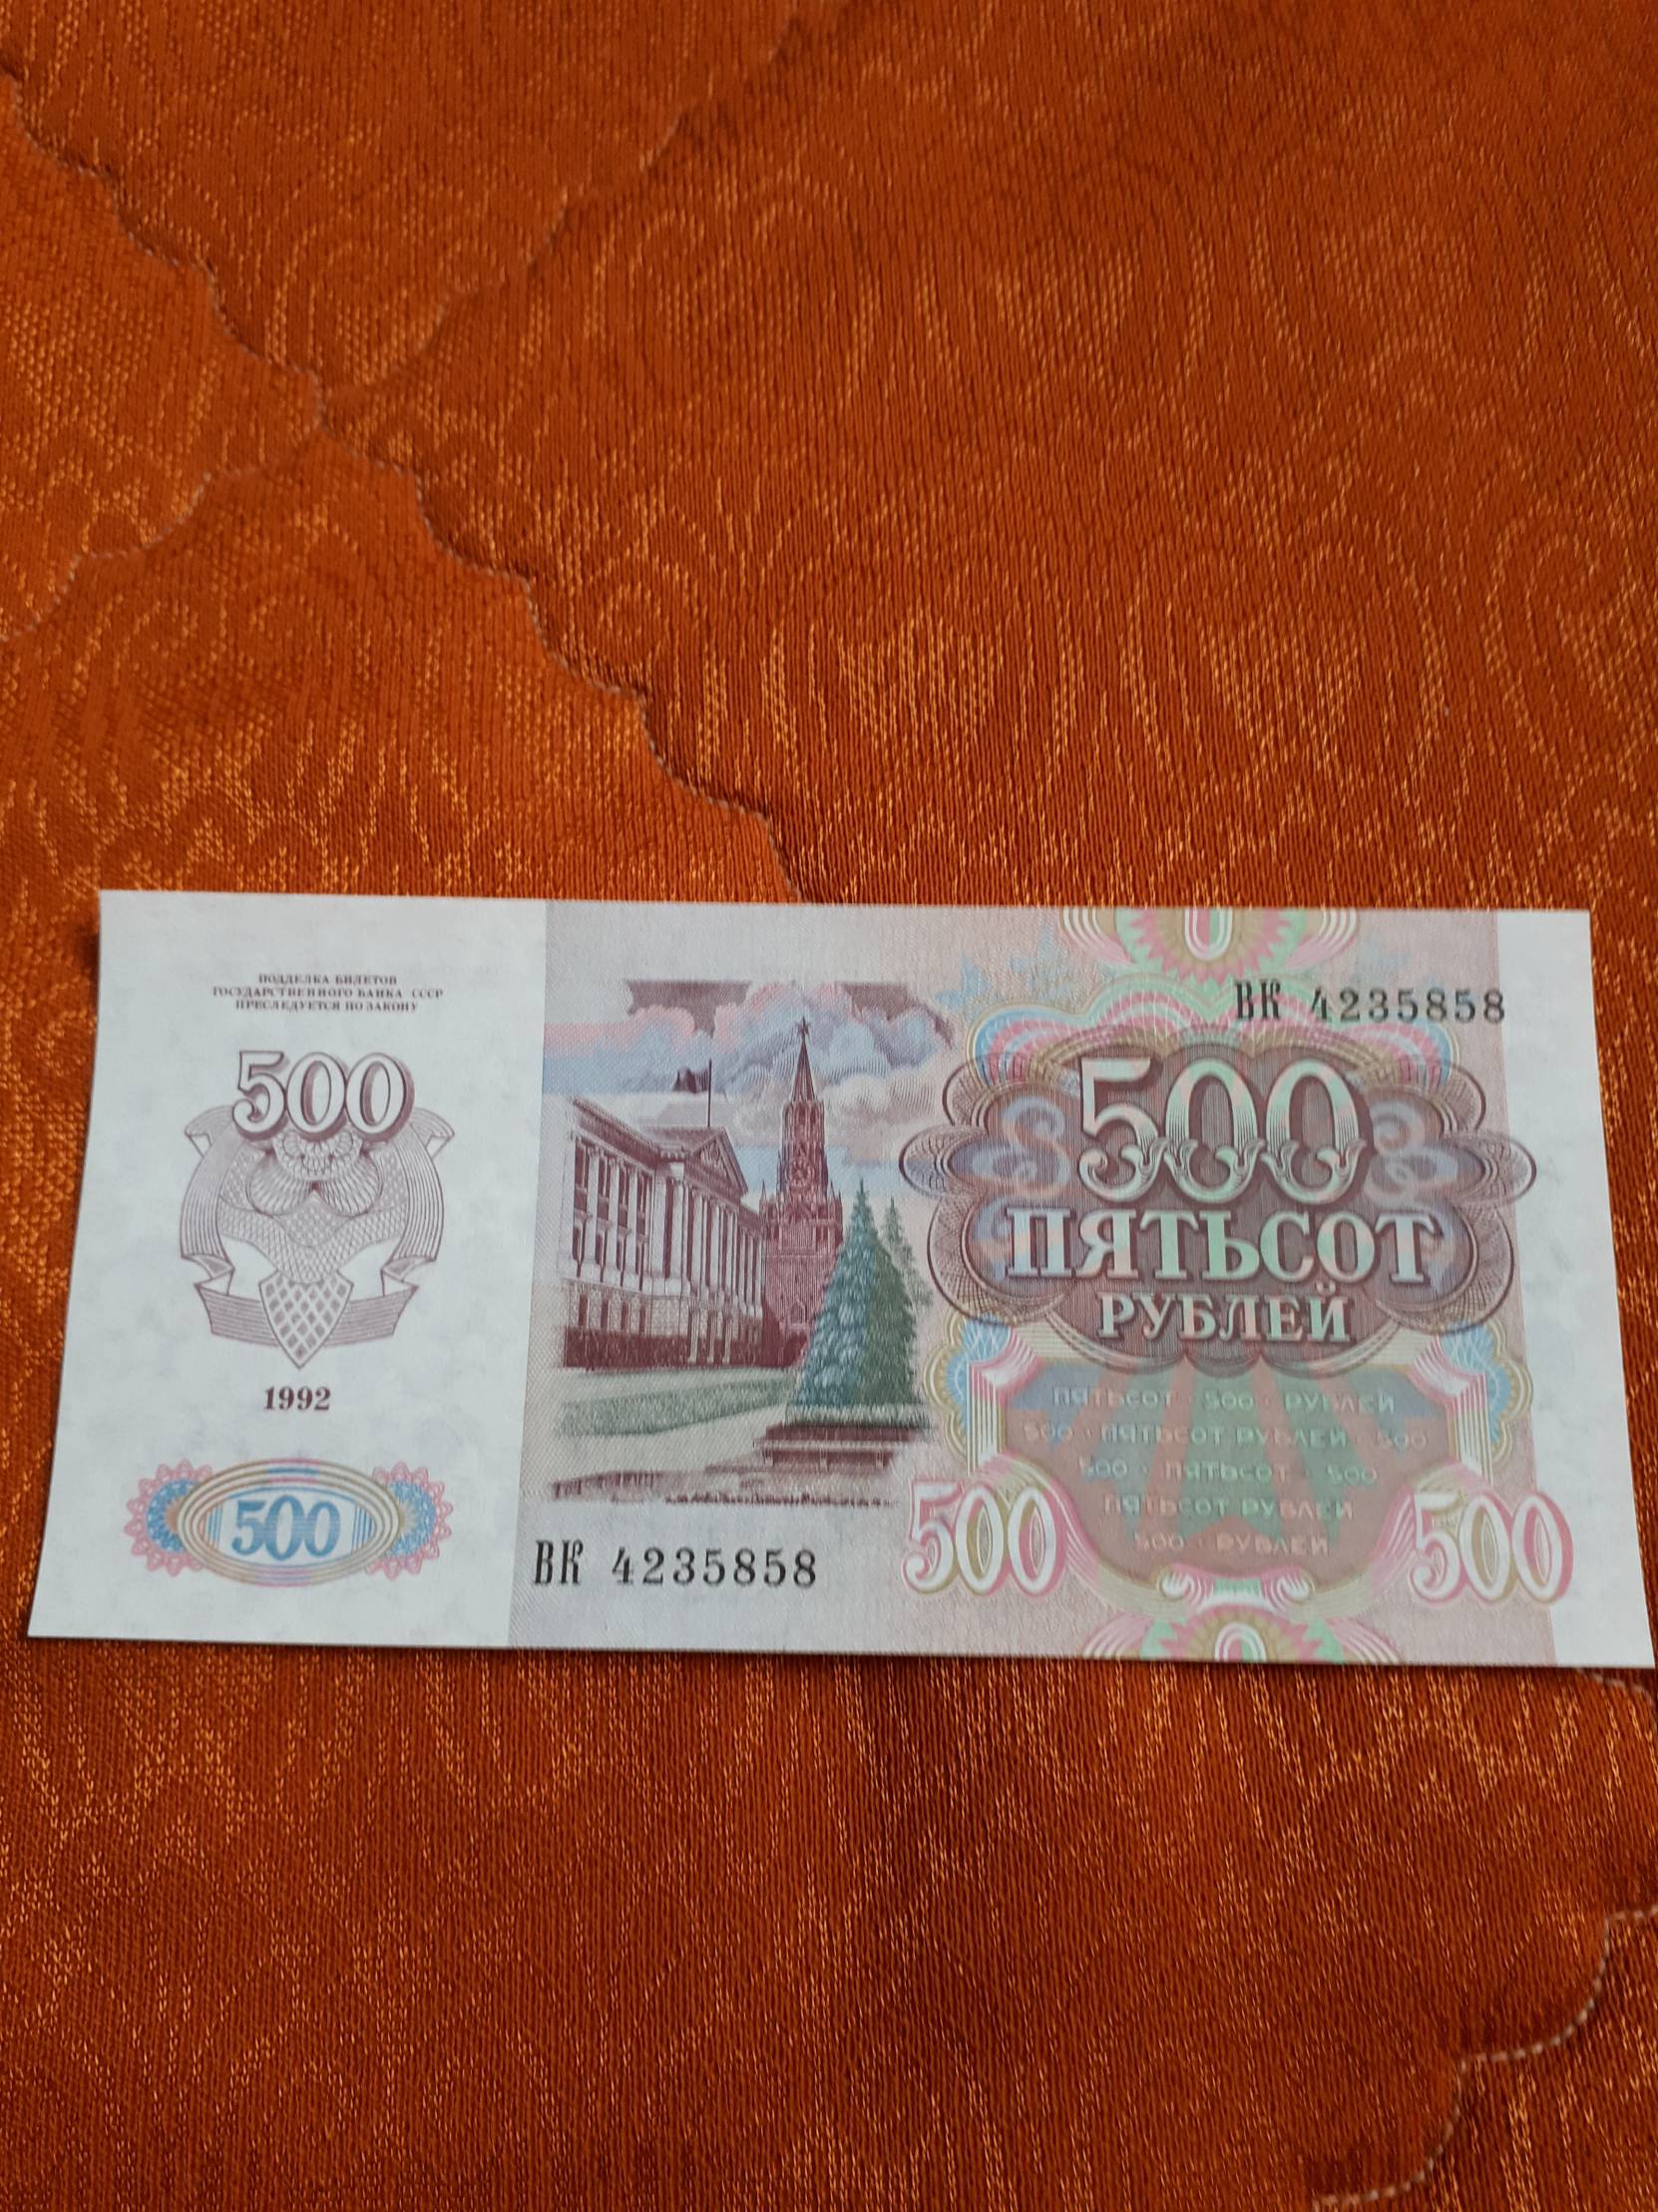 500 рублей 1992. 500 Рублей 1992 года. 500 Рублей России 1992. 500 Рублей 1992 года фото.